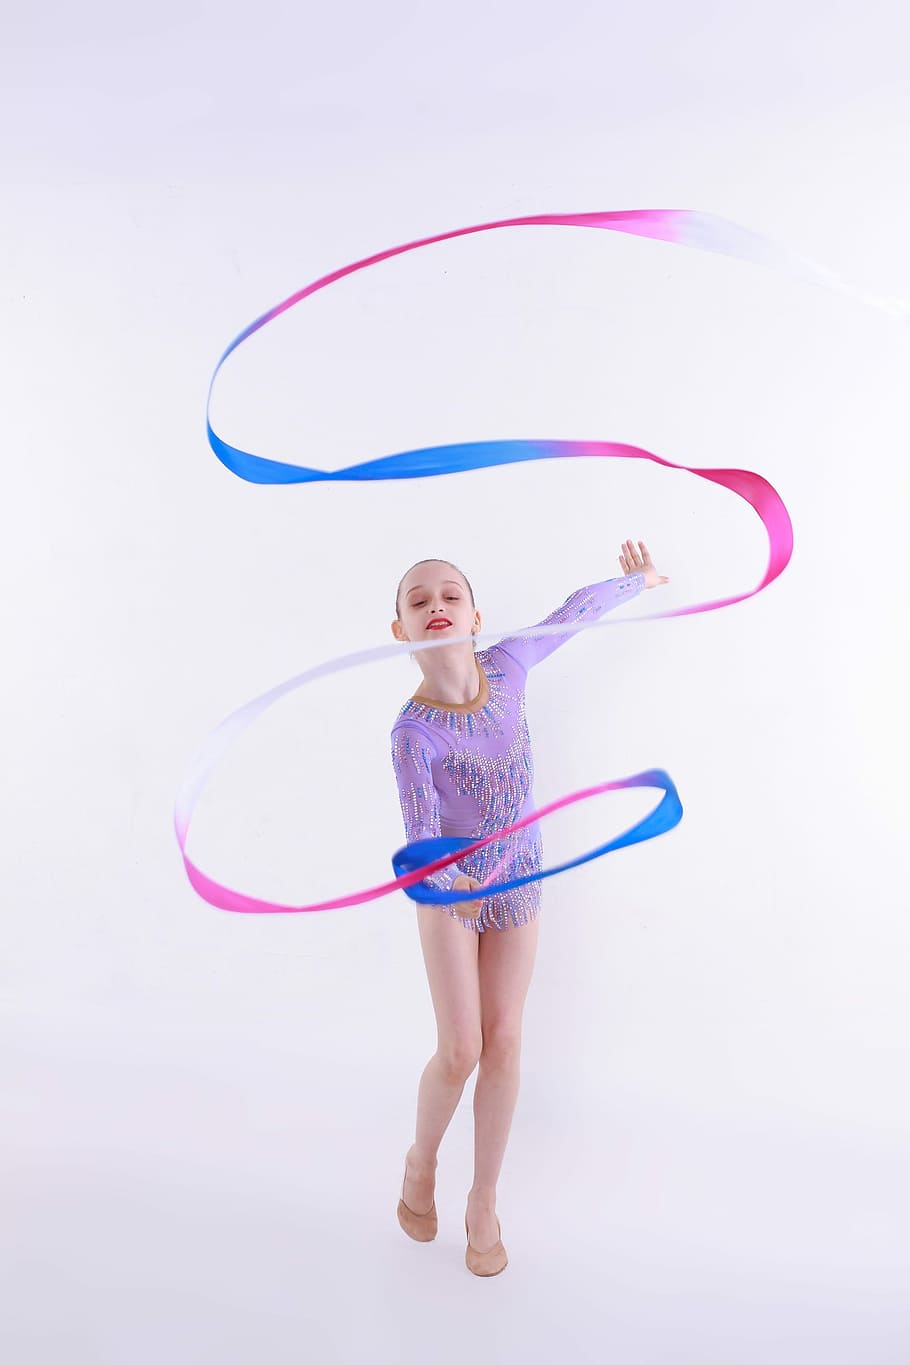 female ribbon gymnast holding ribbon, rsg, rhythmic sports gymnastics, HD wallpaper